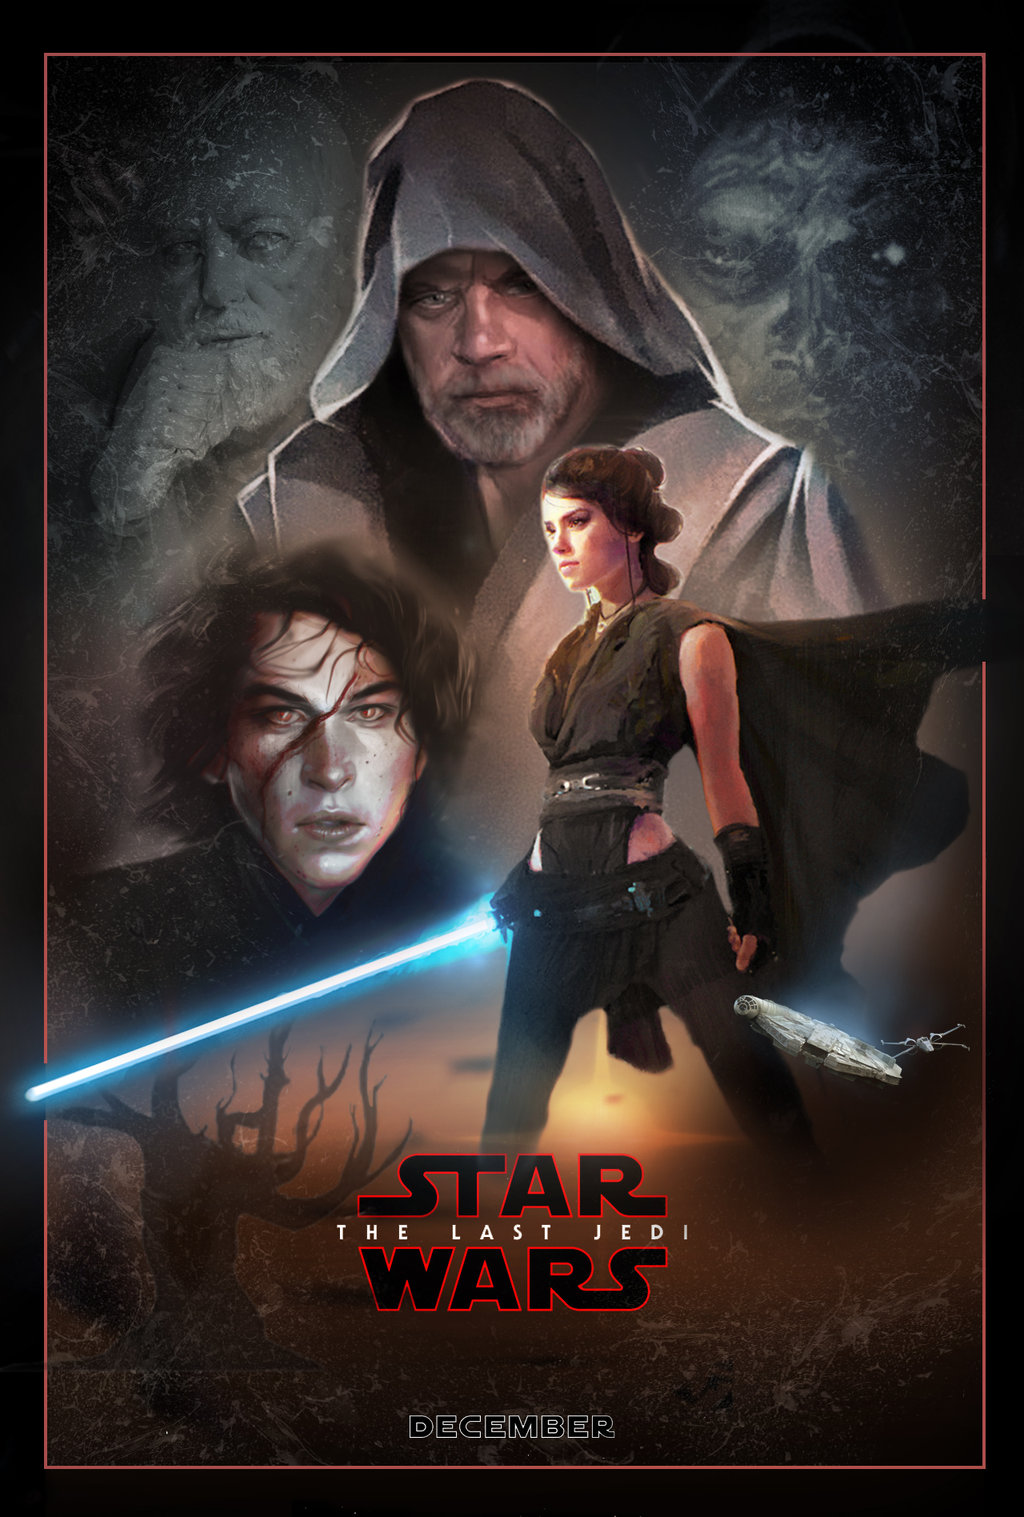 The Last Jedi Poster Wallpaper 1024x1517